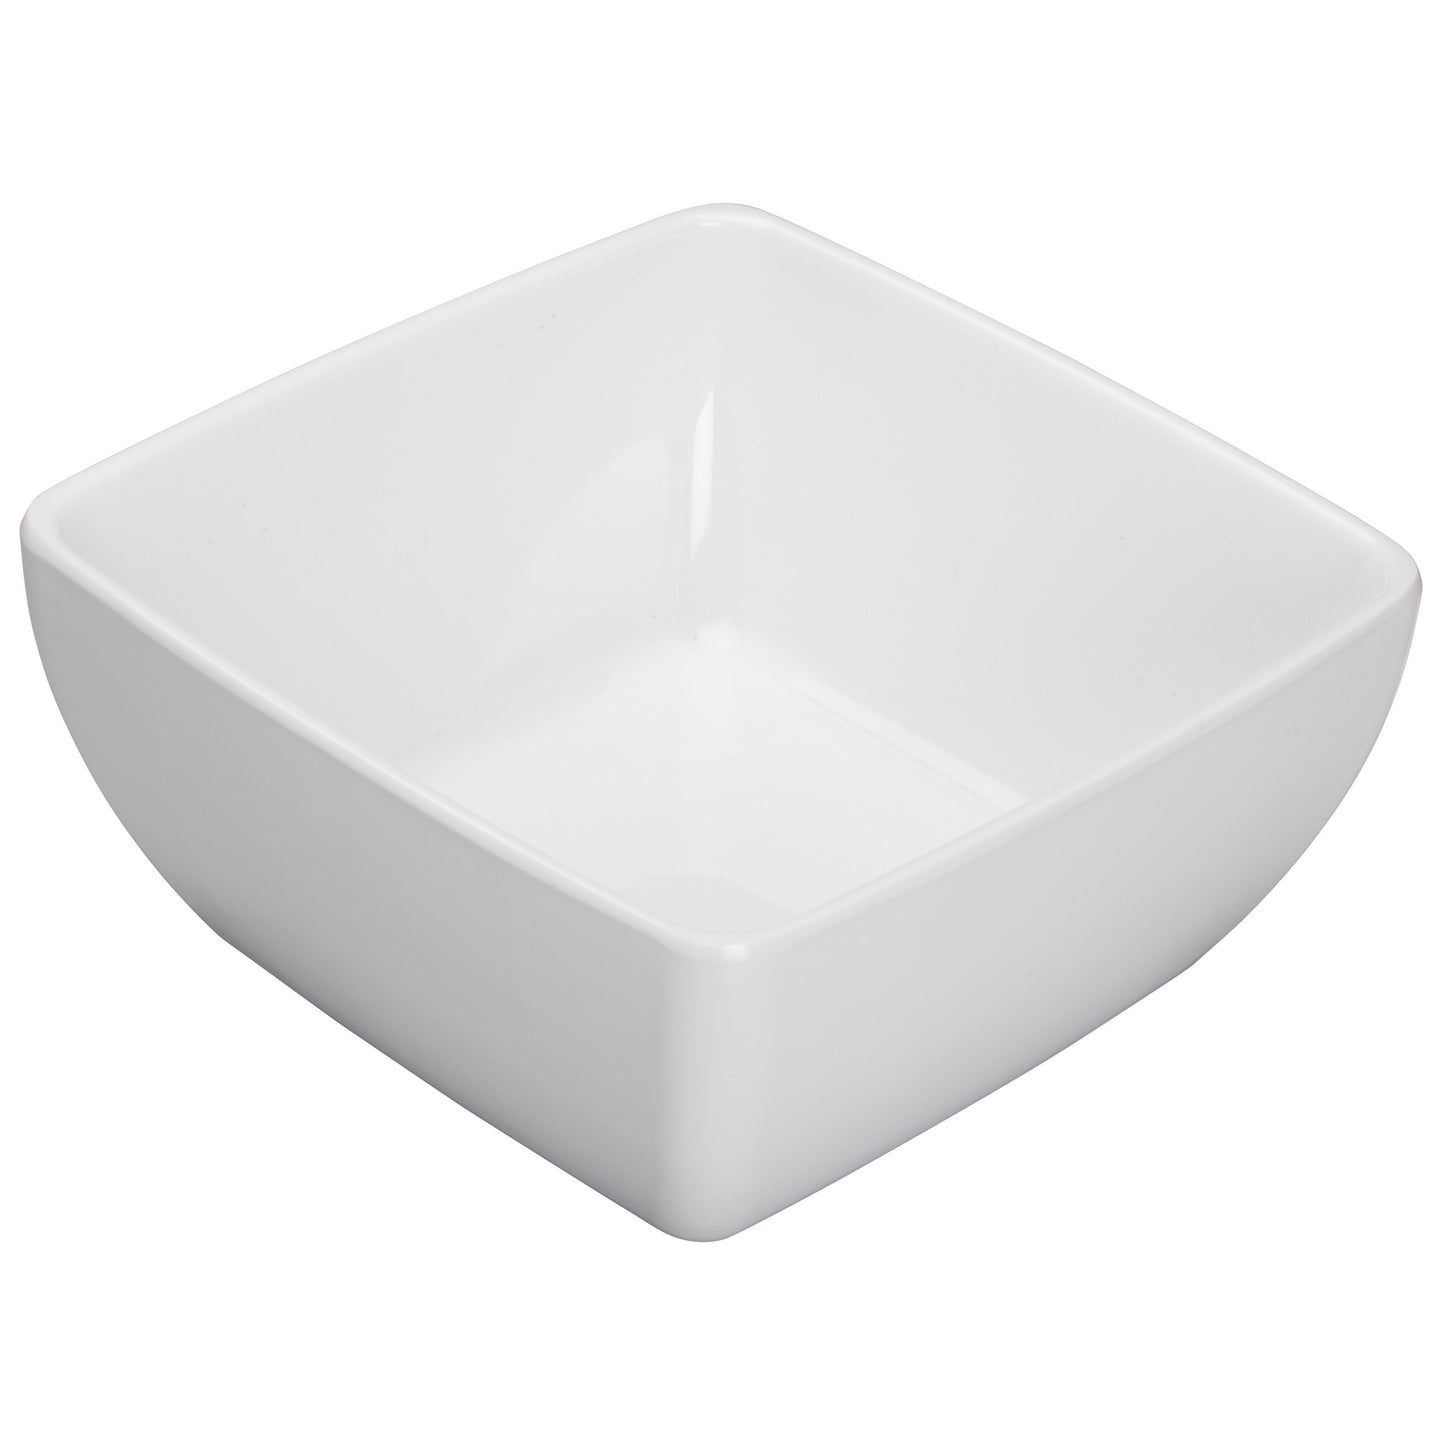 WDM009-204 - 7-1/2" Melamine Square Bowl, White, 12pcs/case